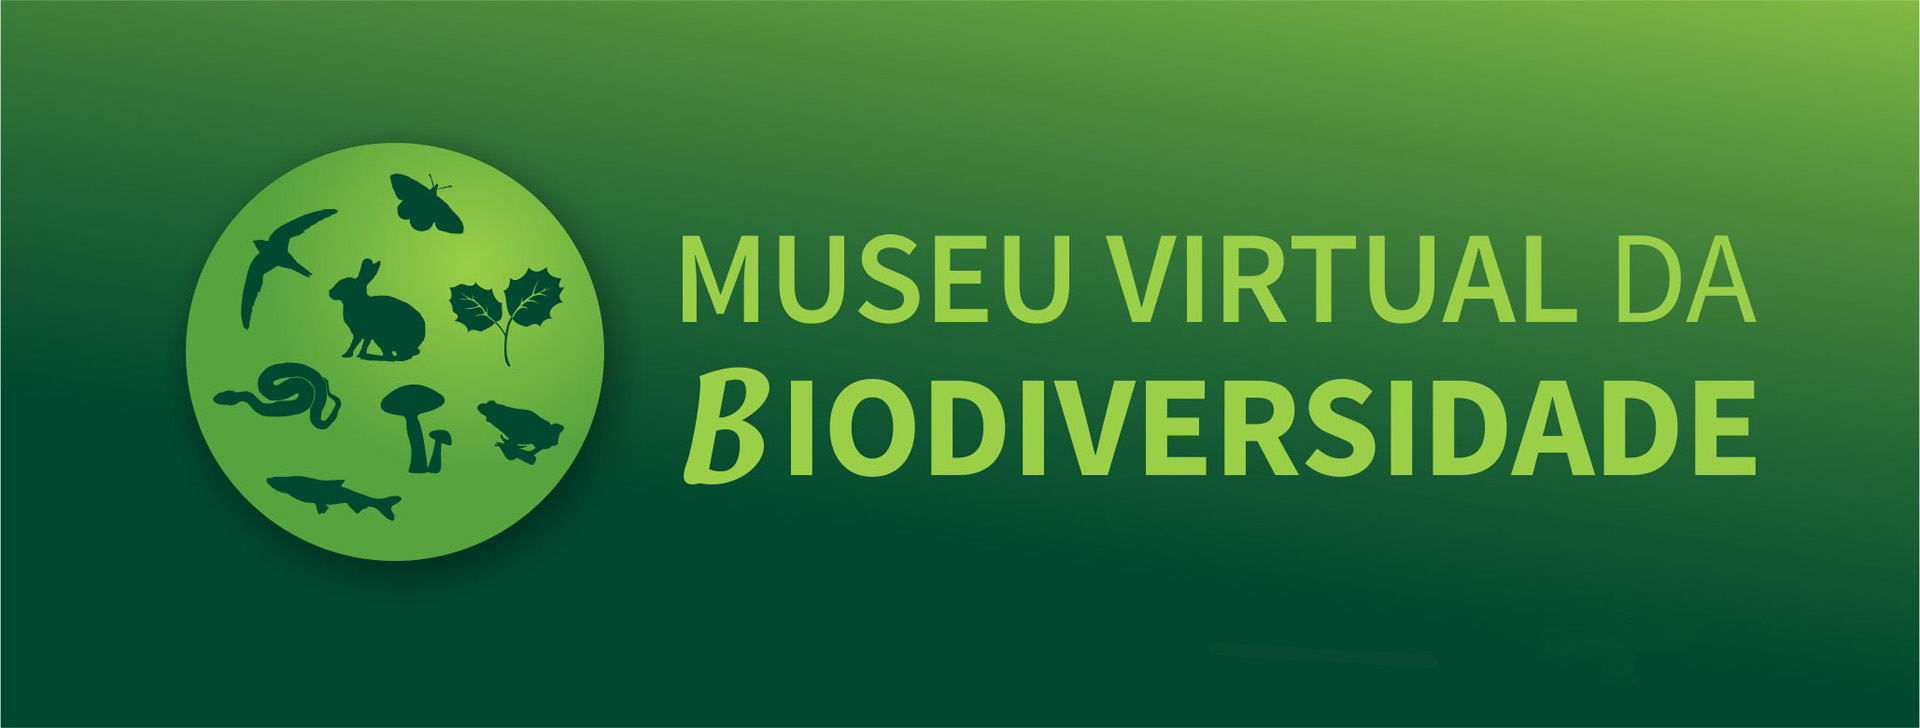 Museu Virtual da Biodiversidade 